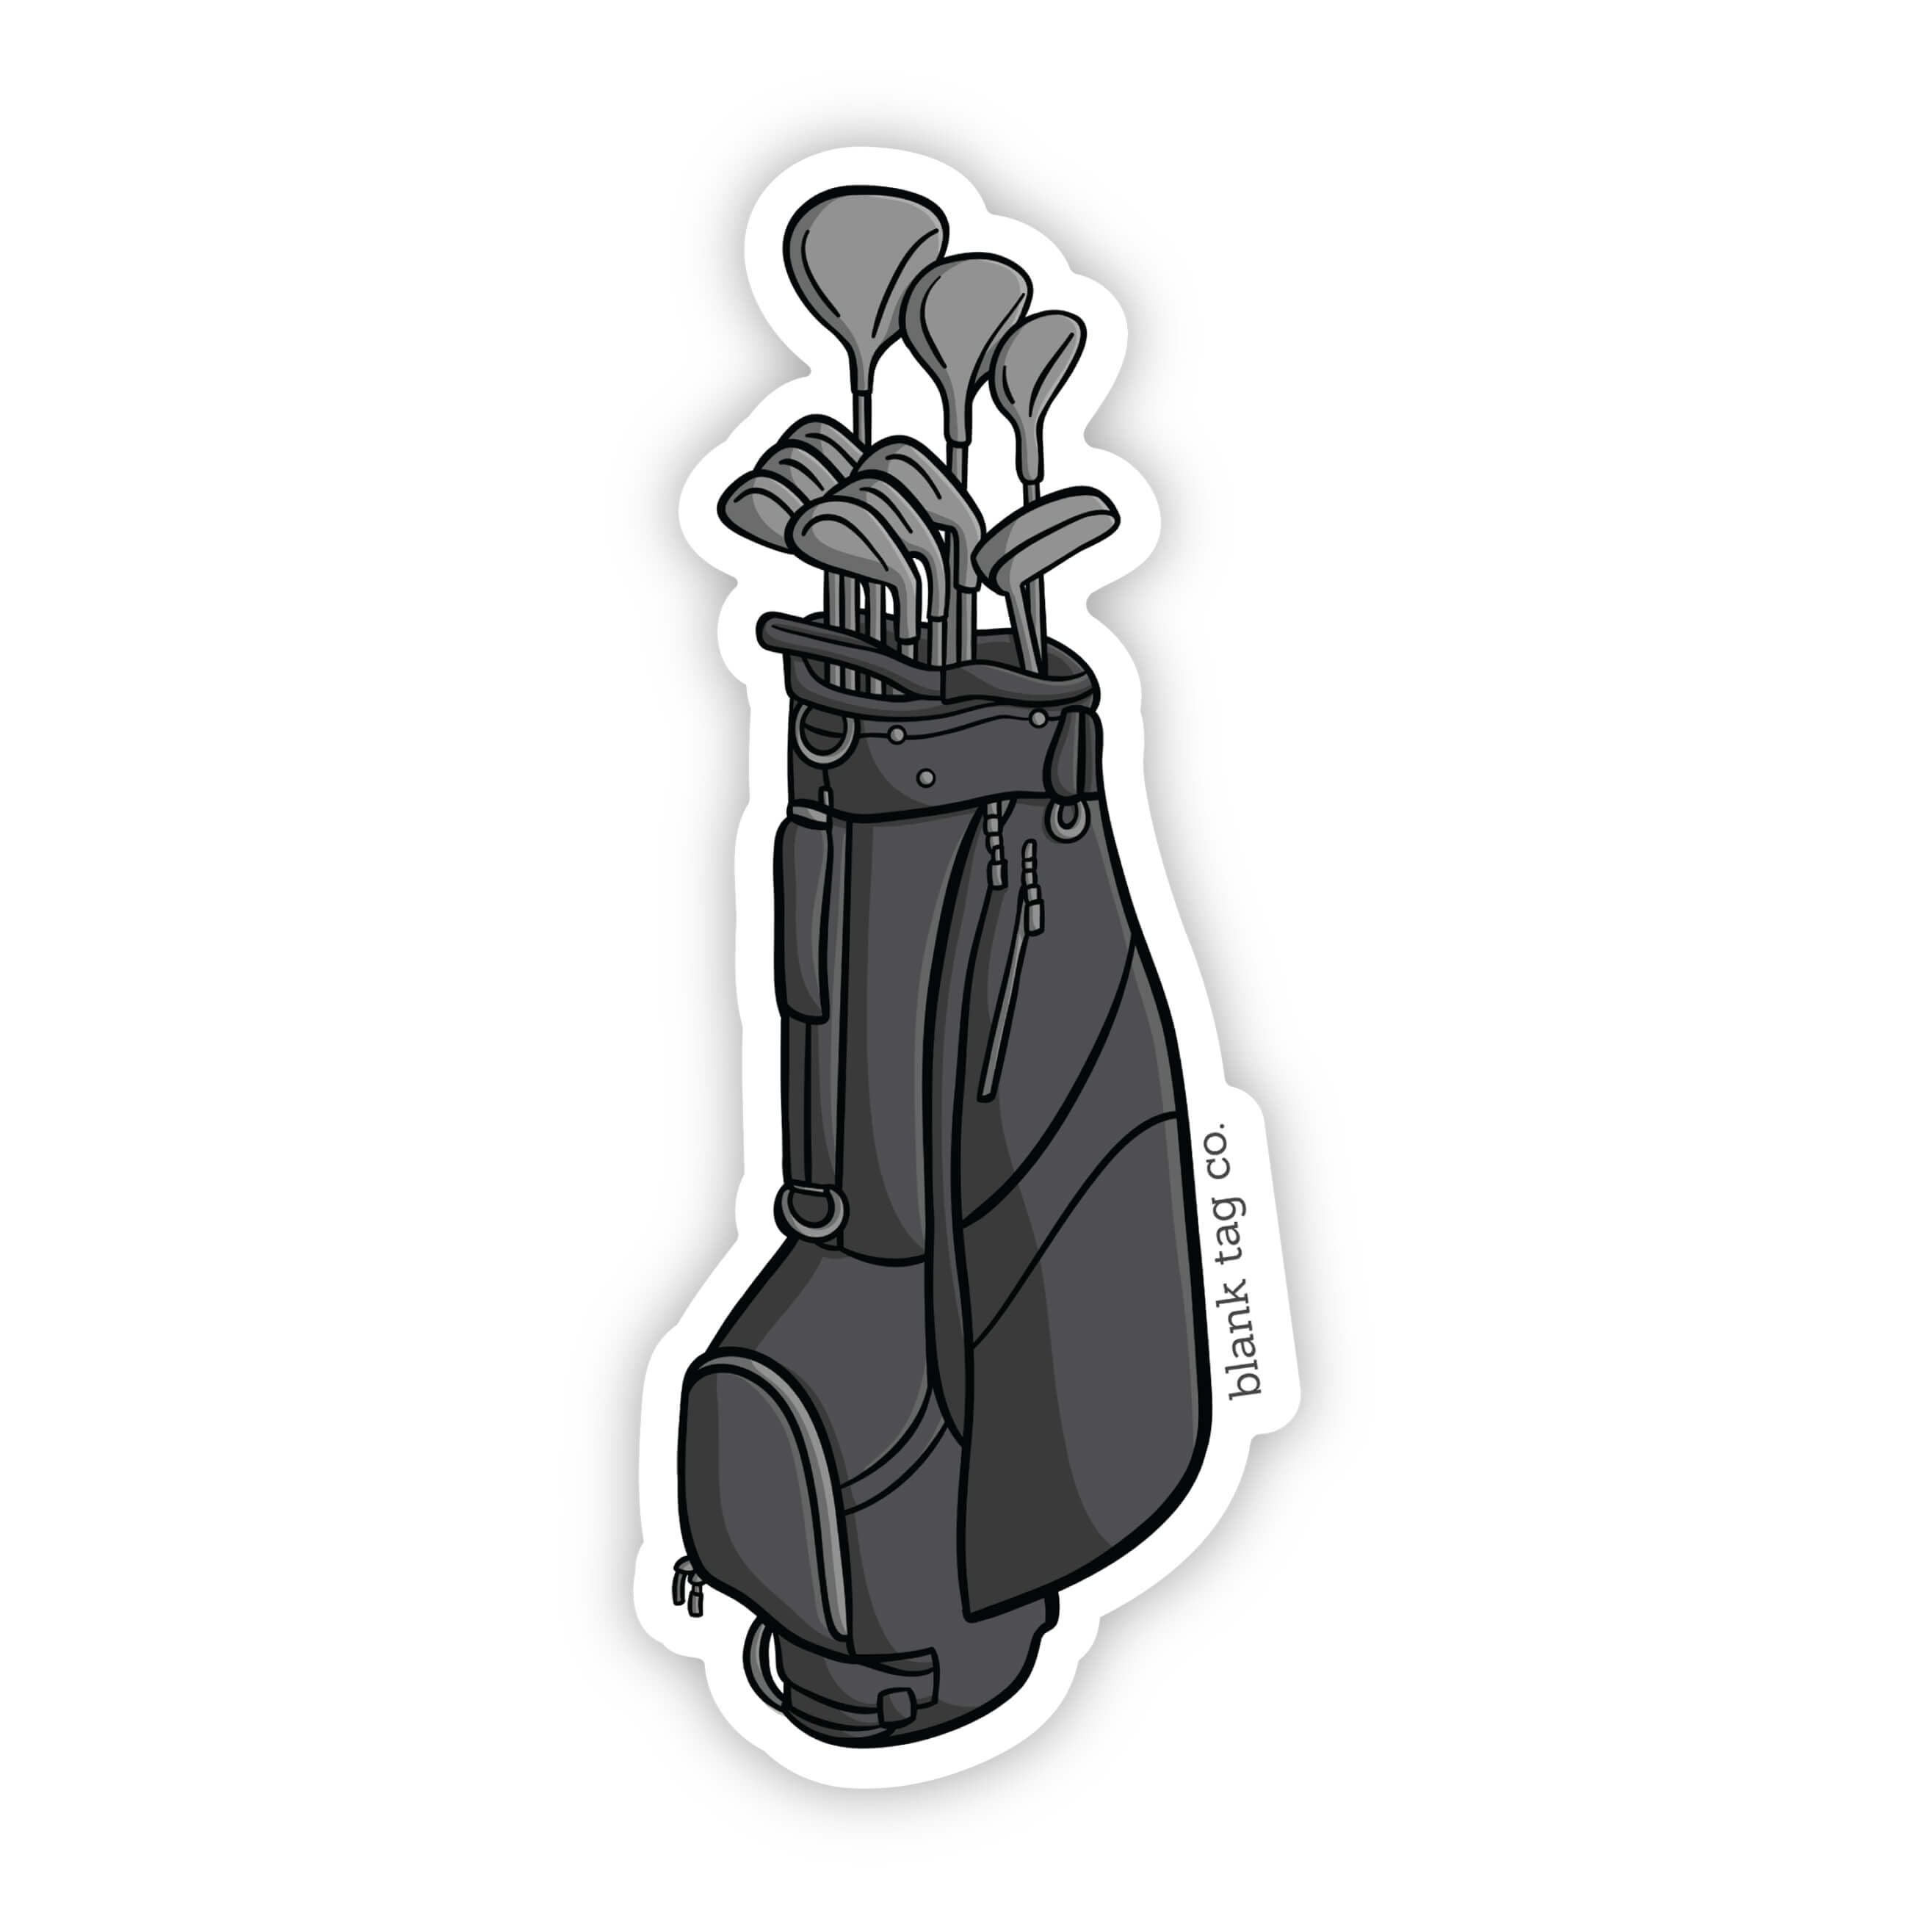 The Golf Clubs Sticker